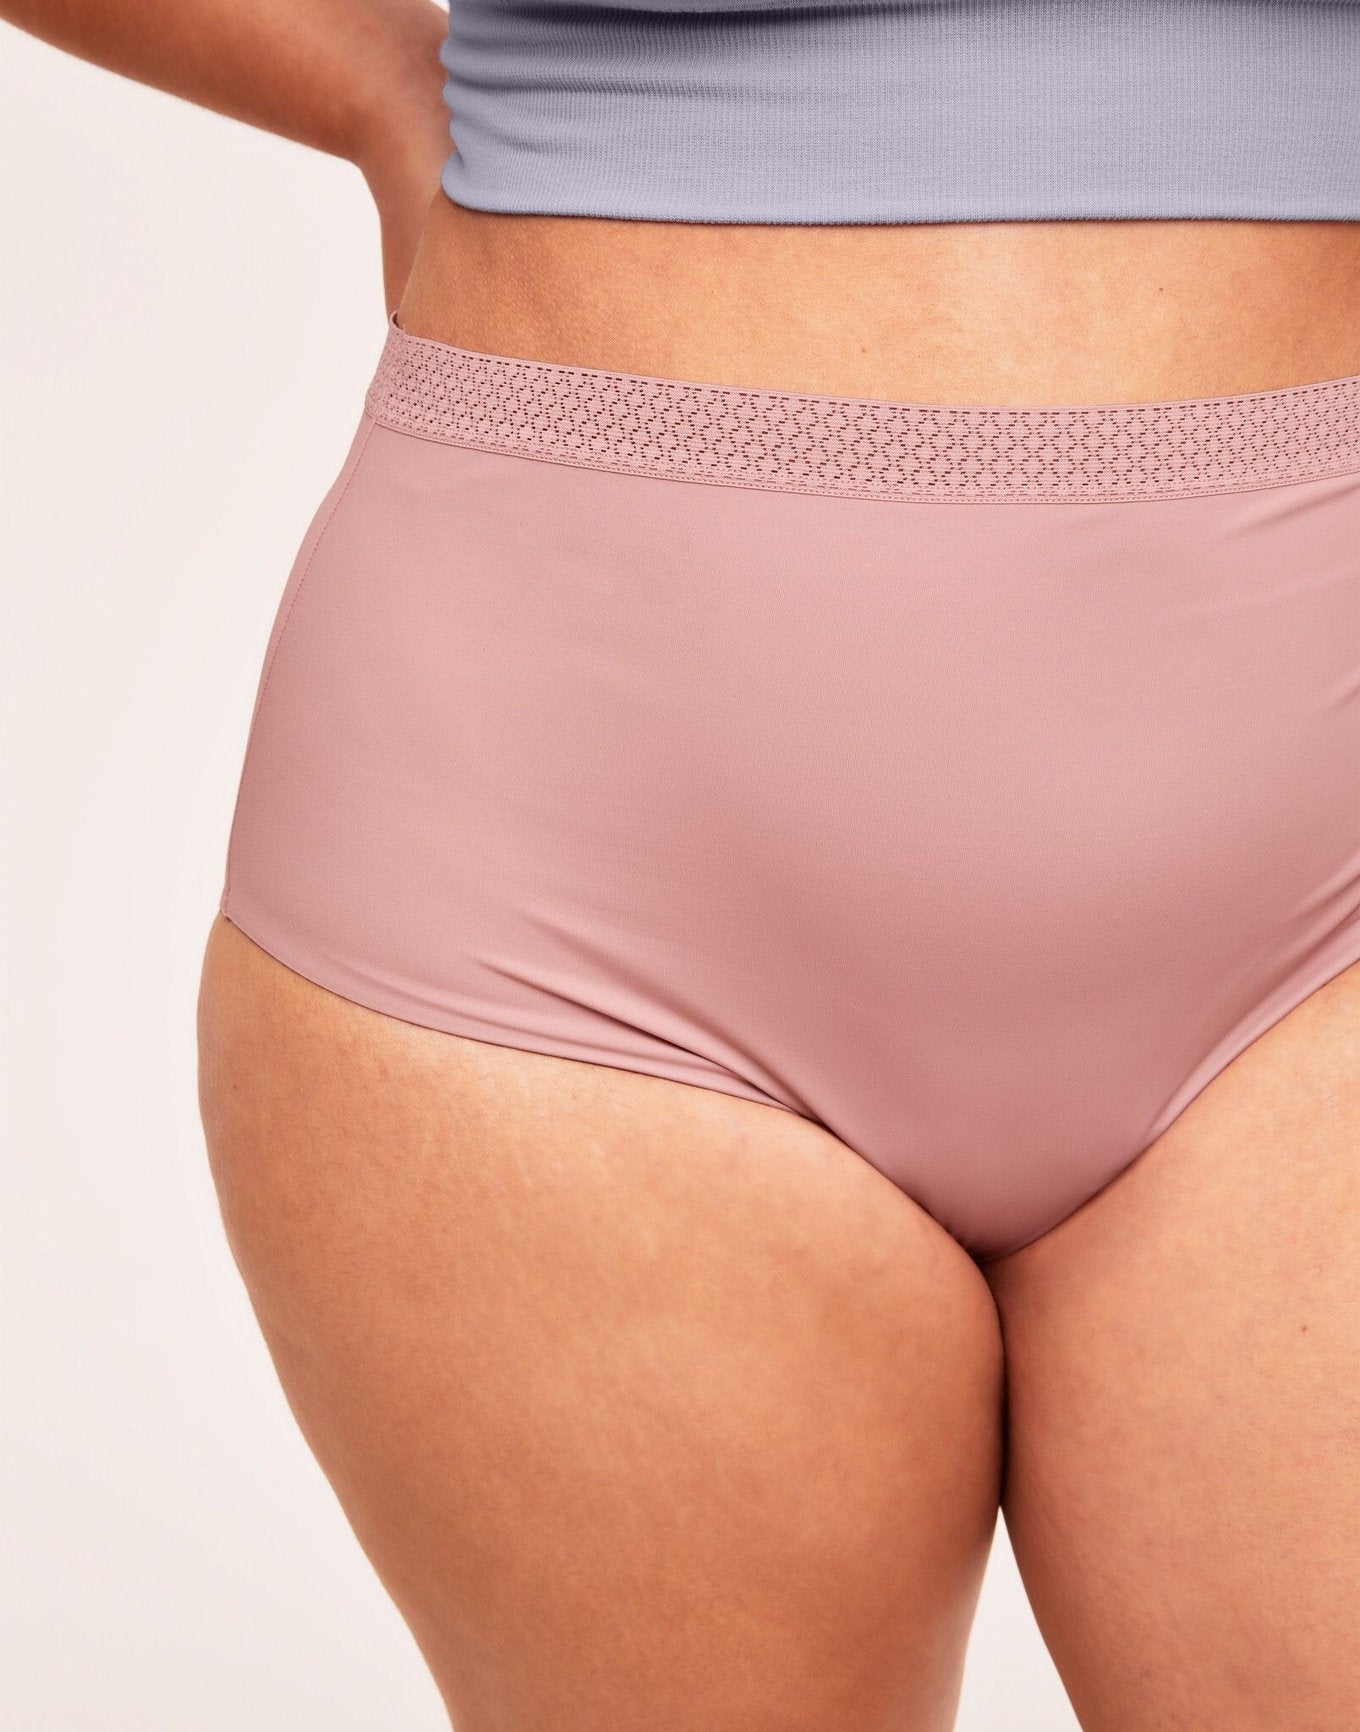 Buy BLOSSOM Women's Cotton Melang'e Panty, Soft Inner Waist